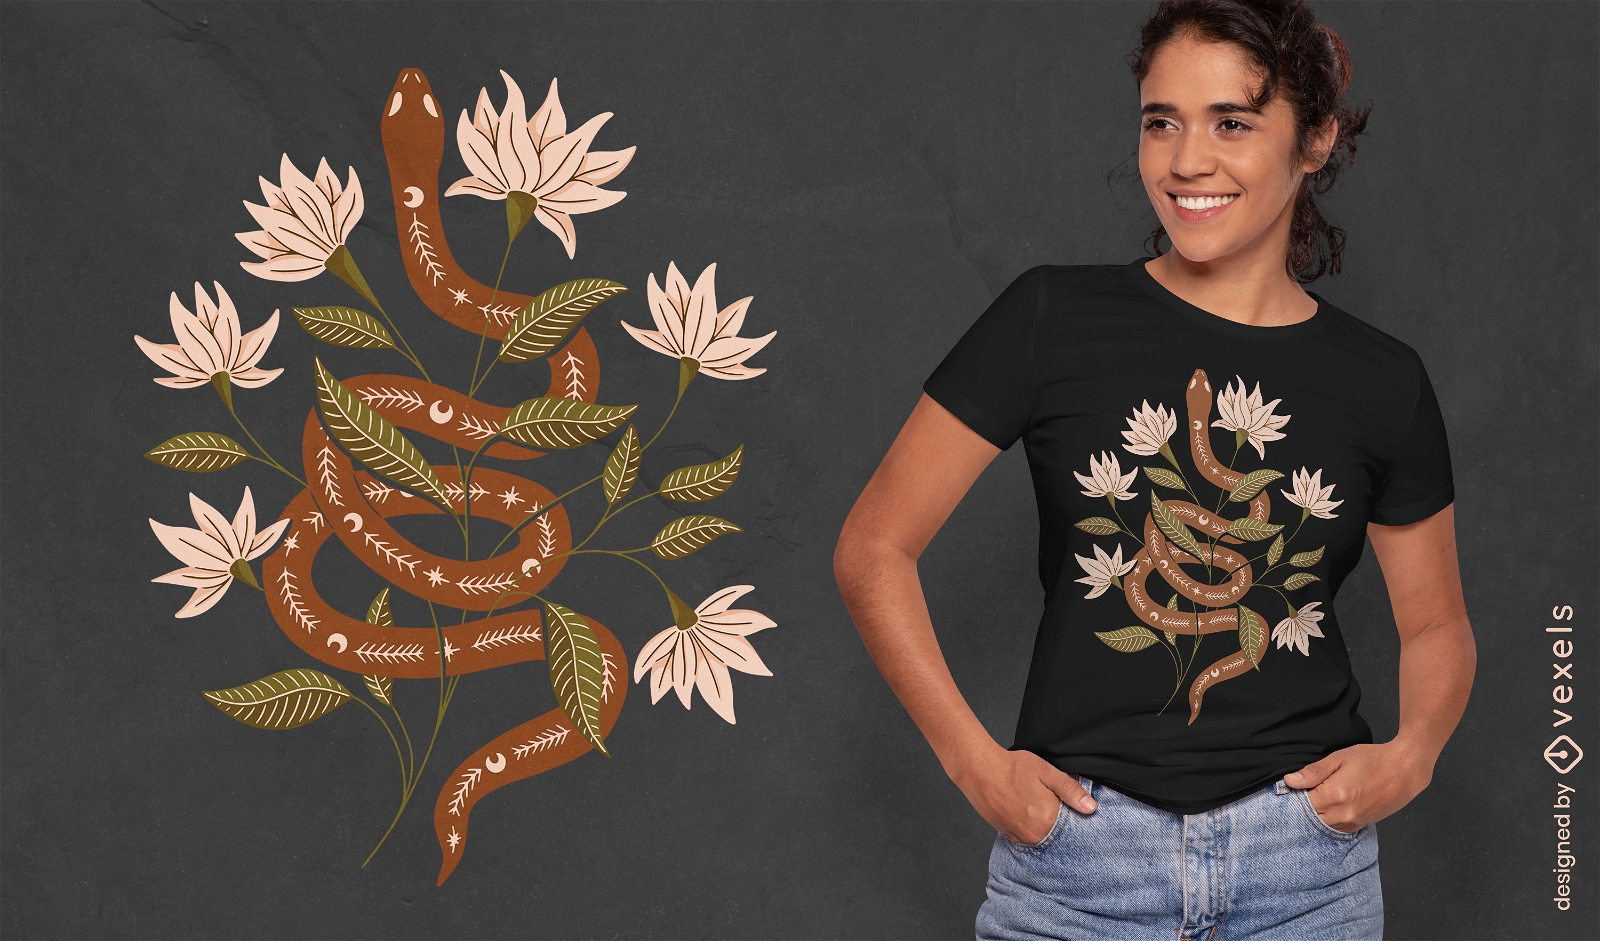 Dise?o de camiseta de serpiente y flores Wicca.